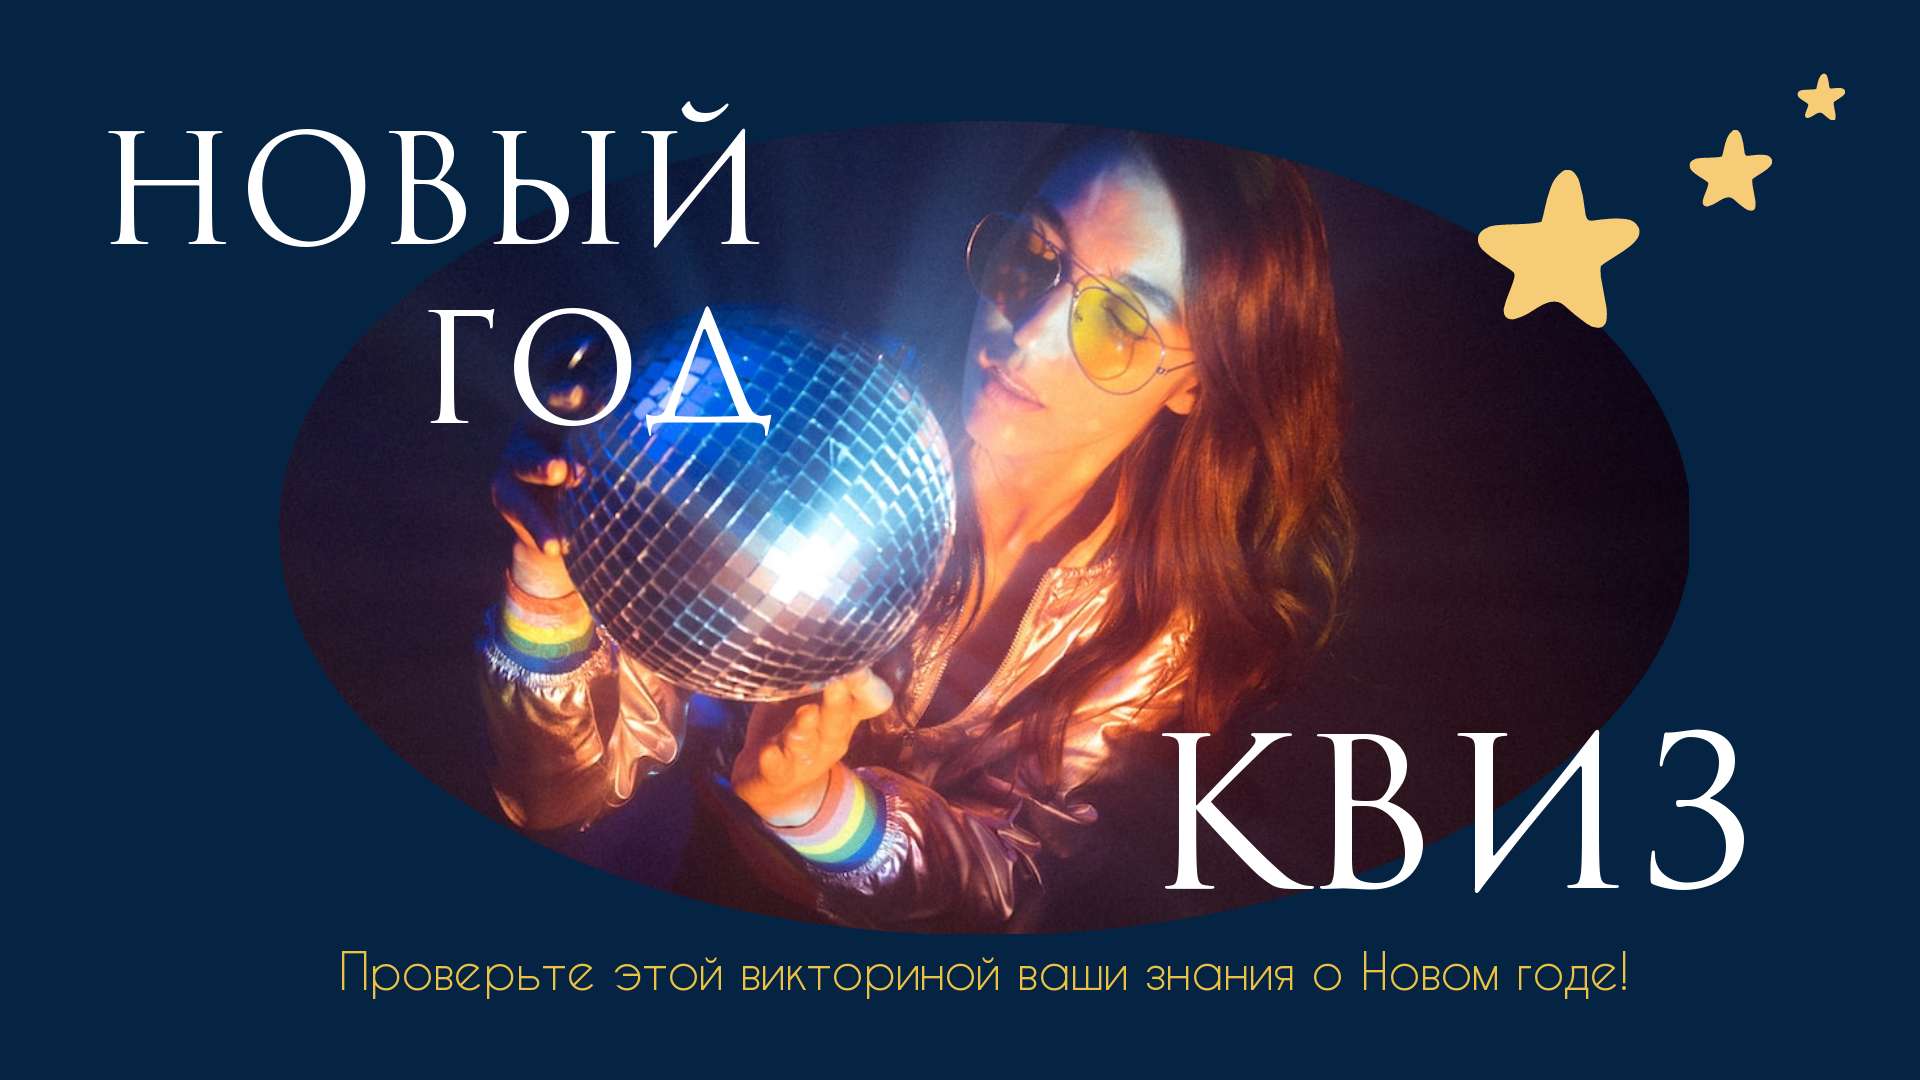 Шаблон приглашения на Новогодний квиз с фото девушки с диско шаром в руках